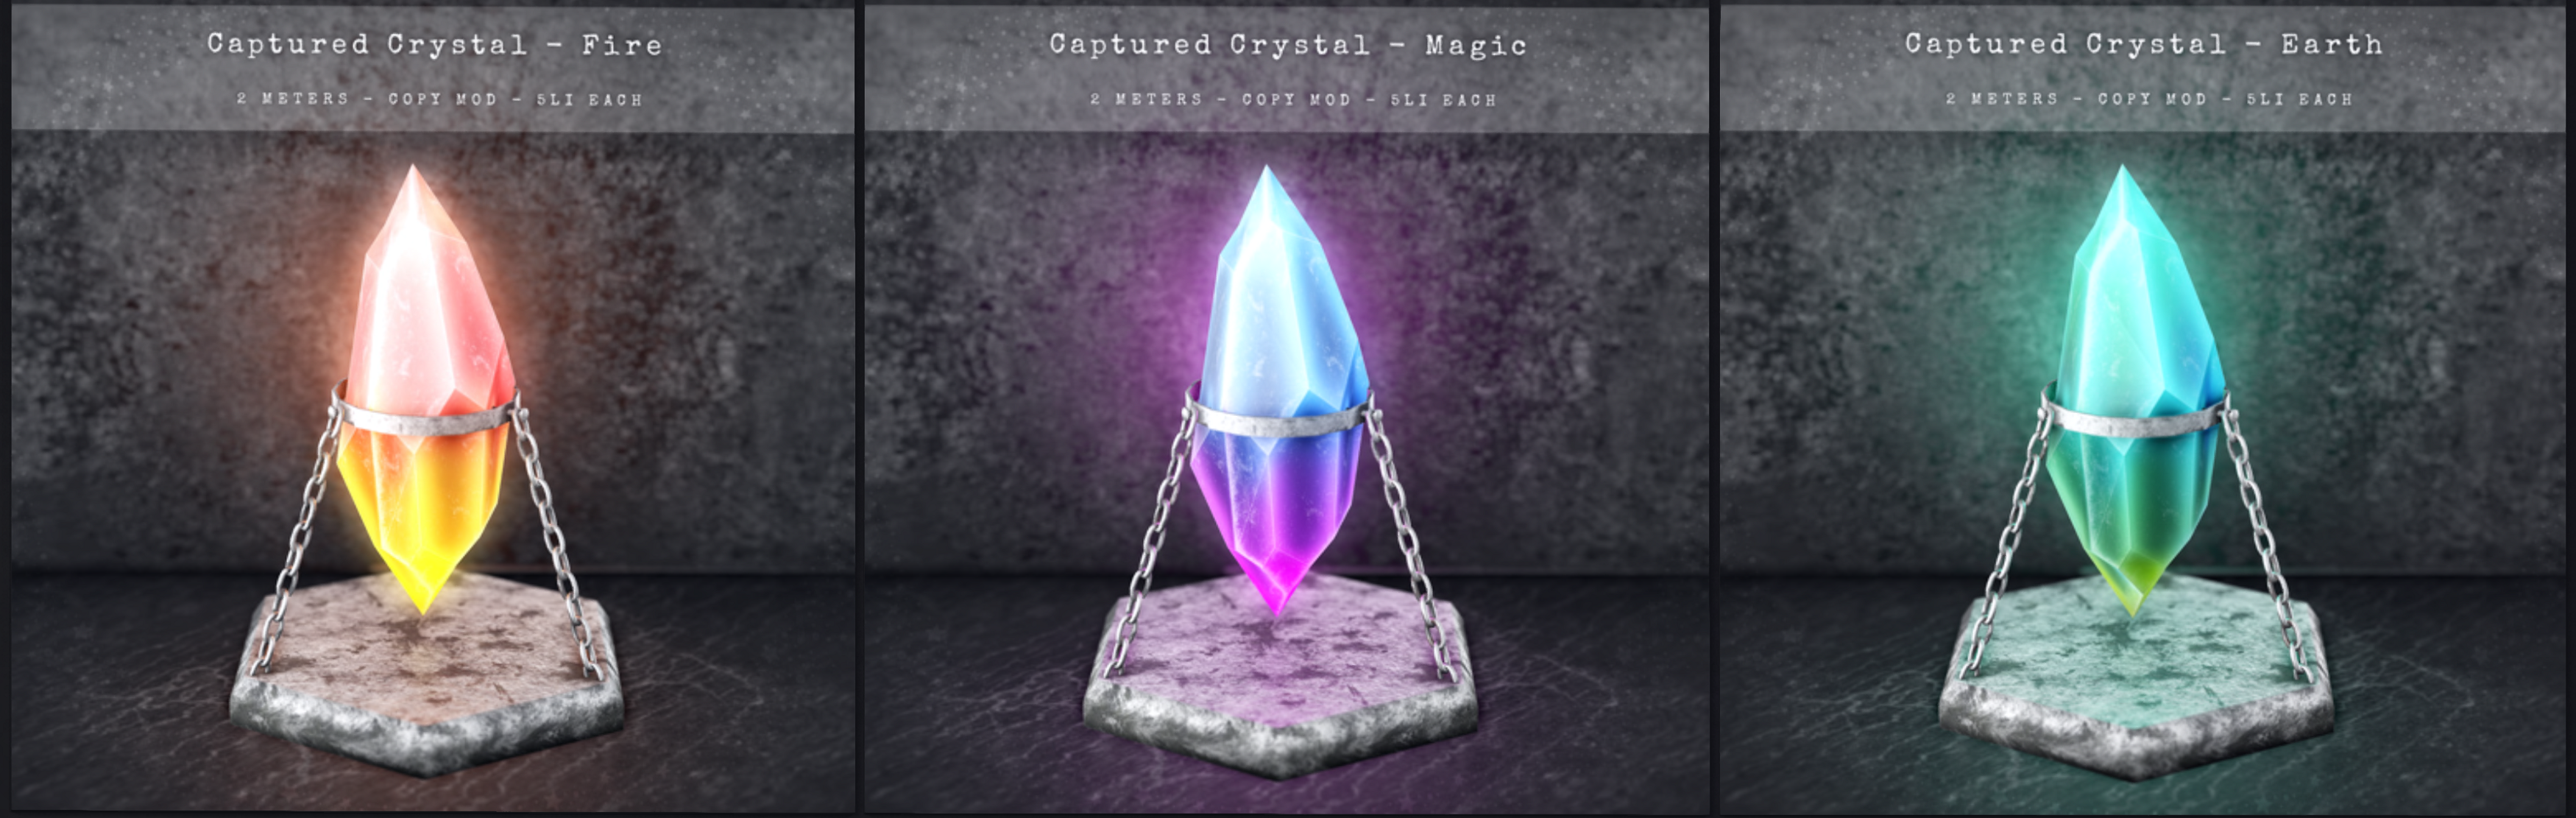 Celeste – Captured Crystals